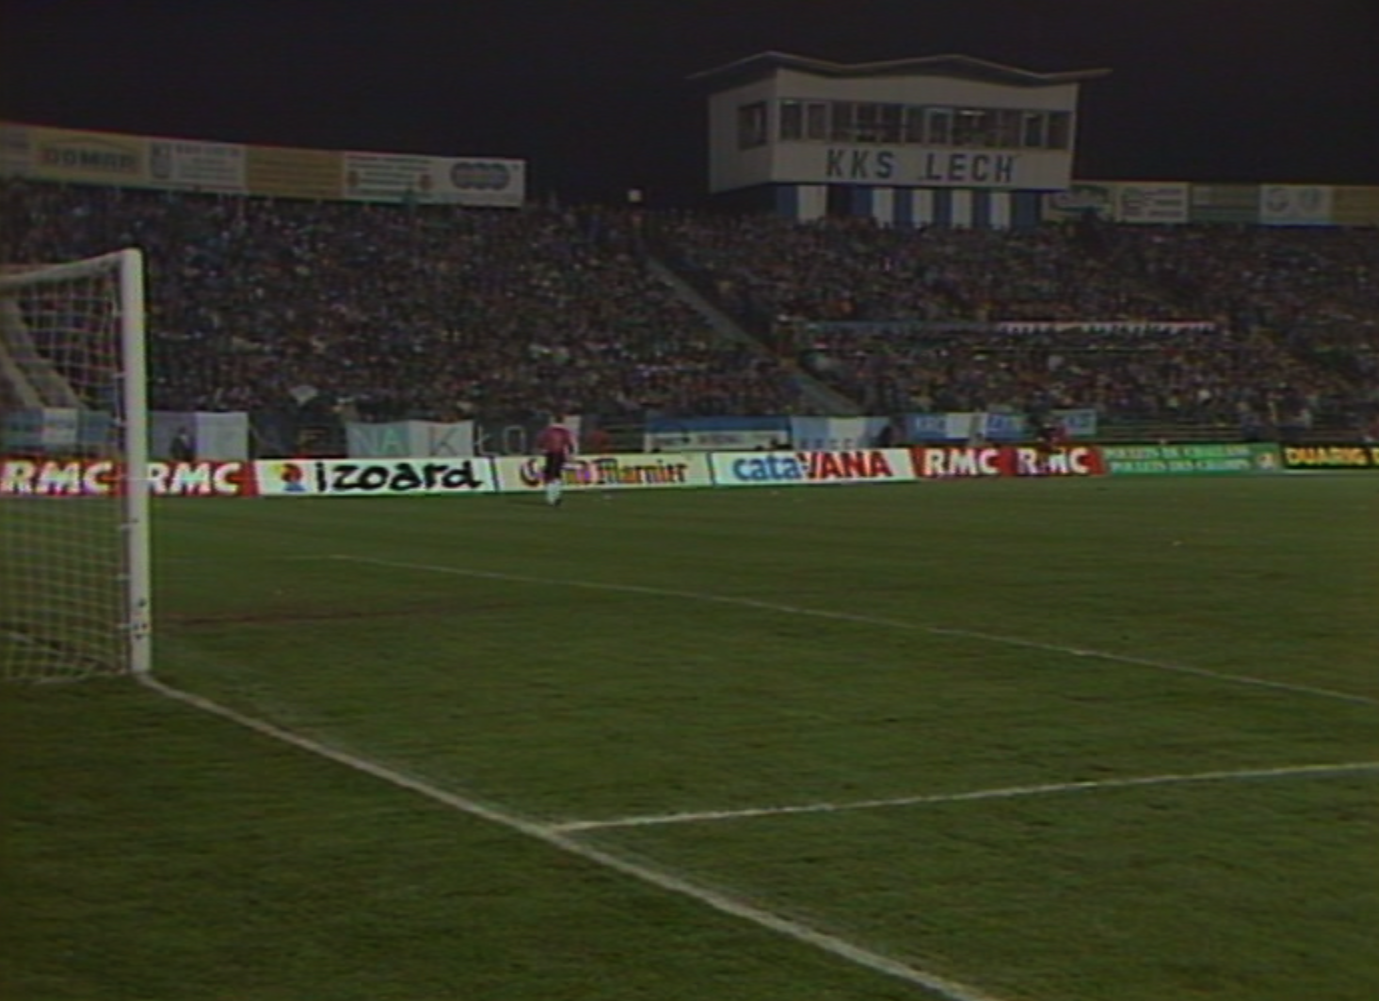 Lech Poznań - Olympique Marsylia 3:2 (25.10.1990)